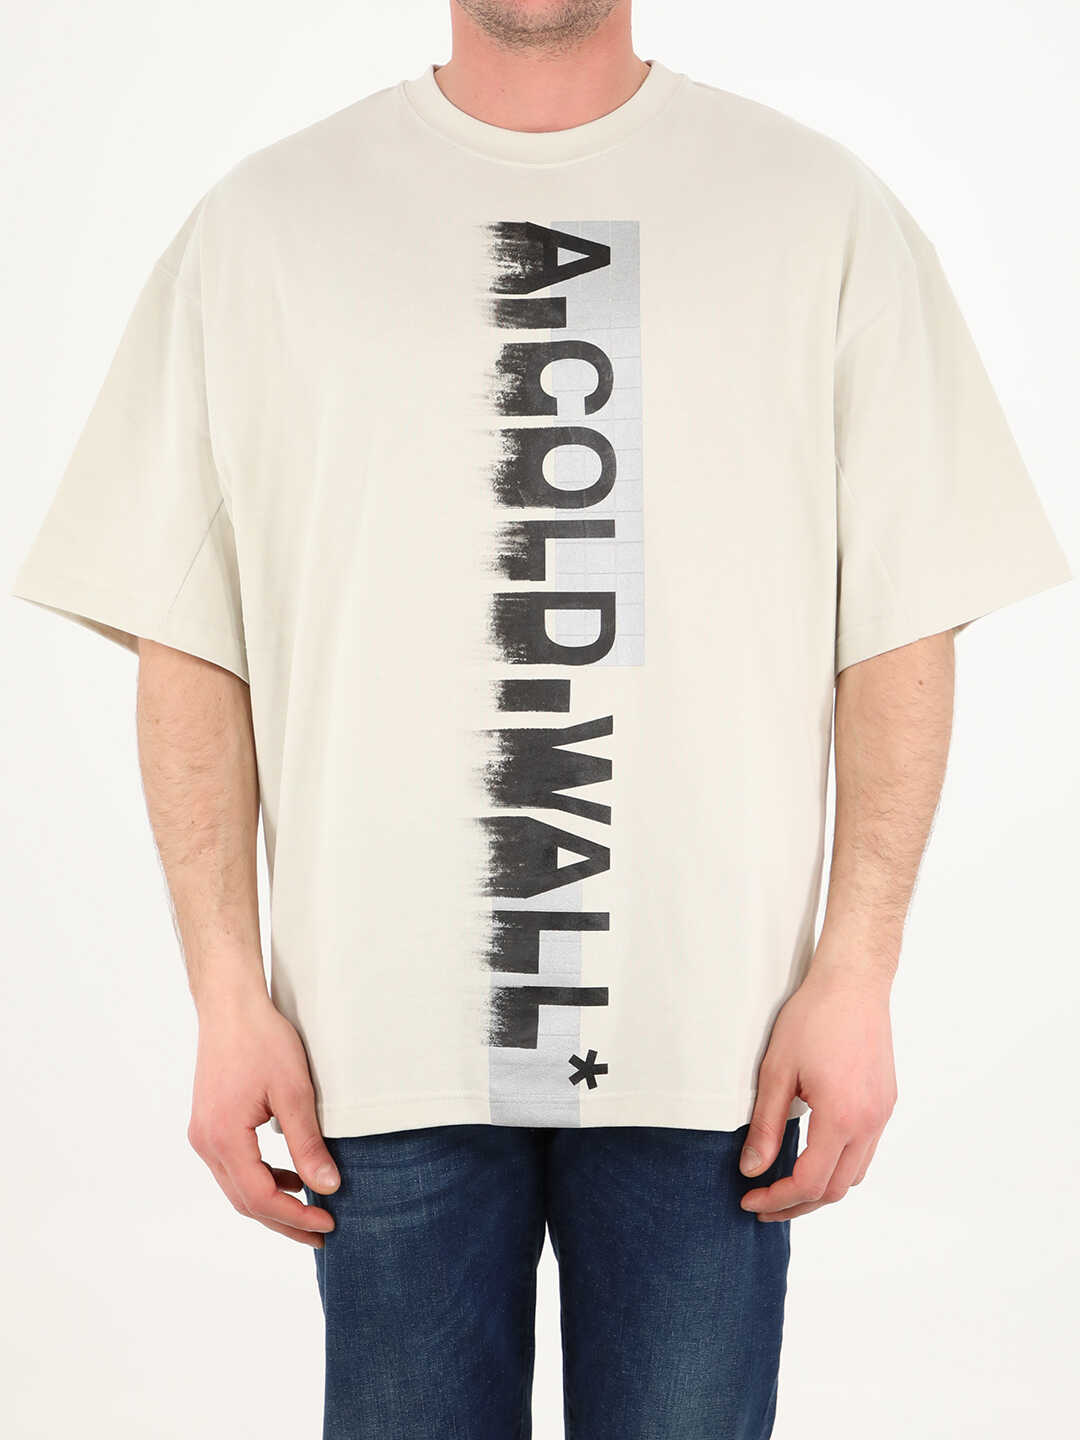 A-COLD-WALL* Maxi Logo T-Shirt ACWMTS066 Cream